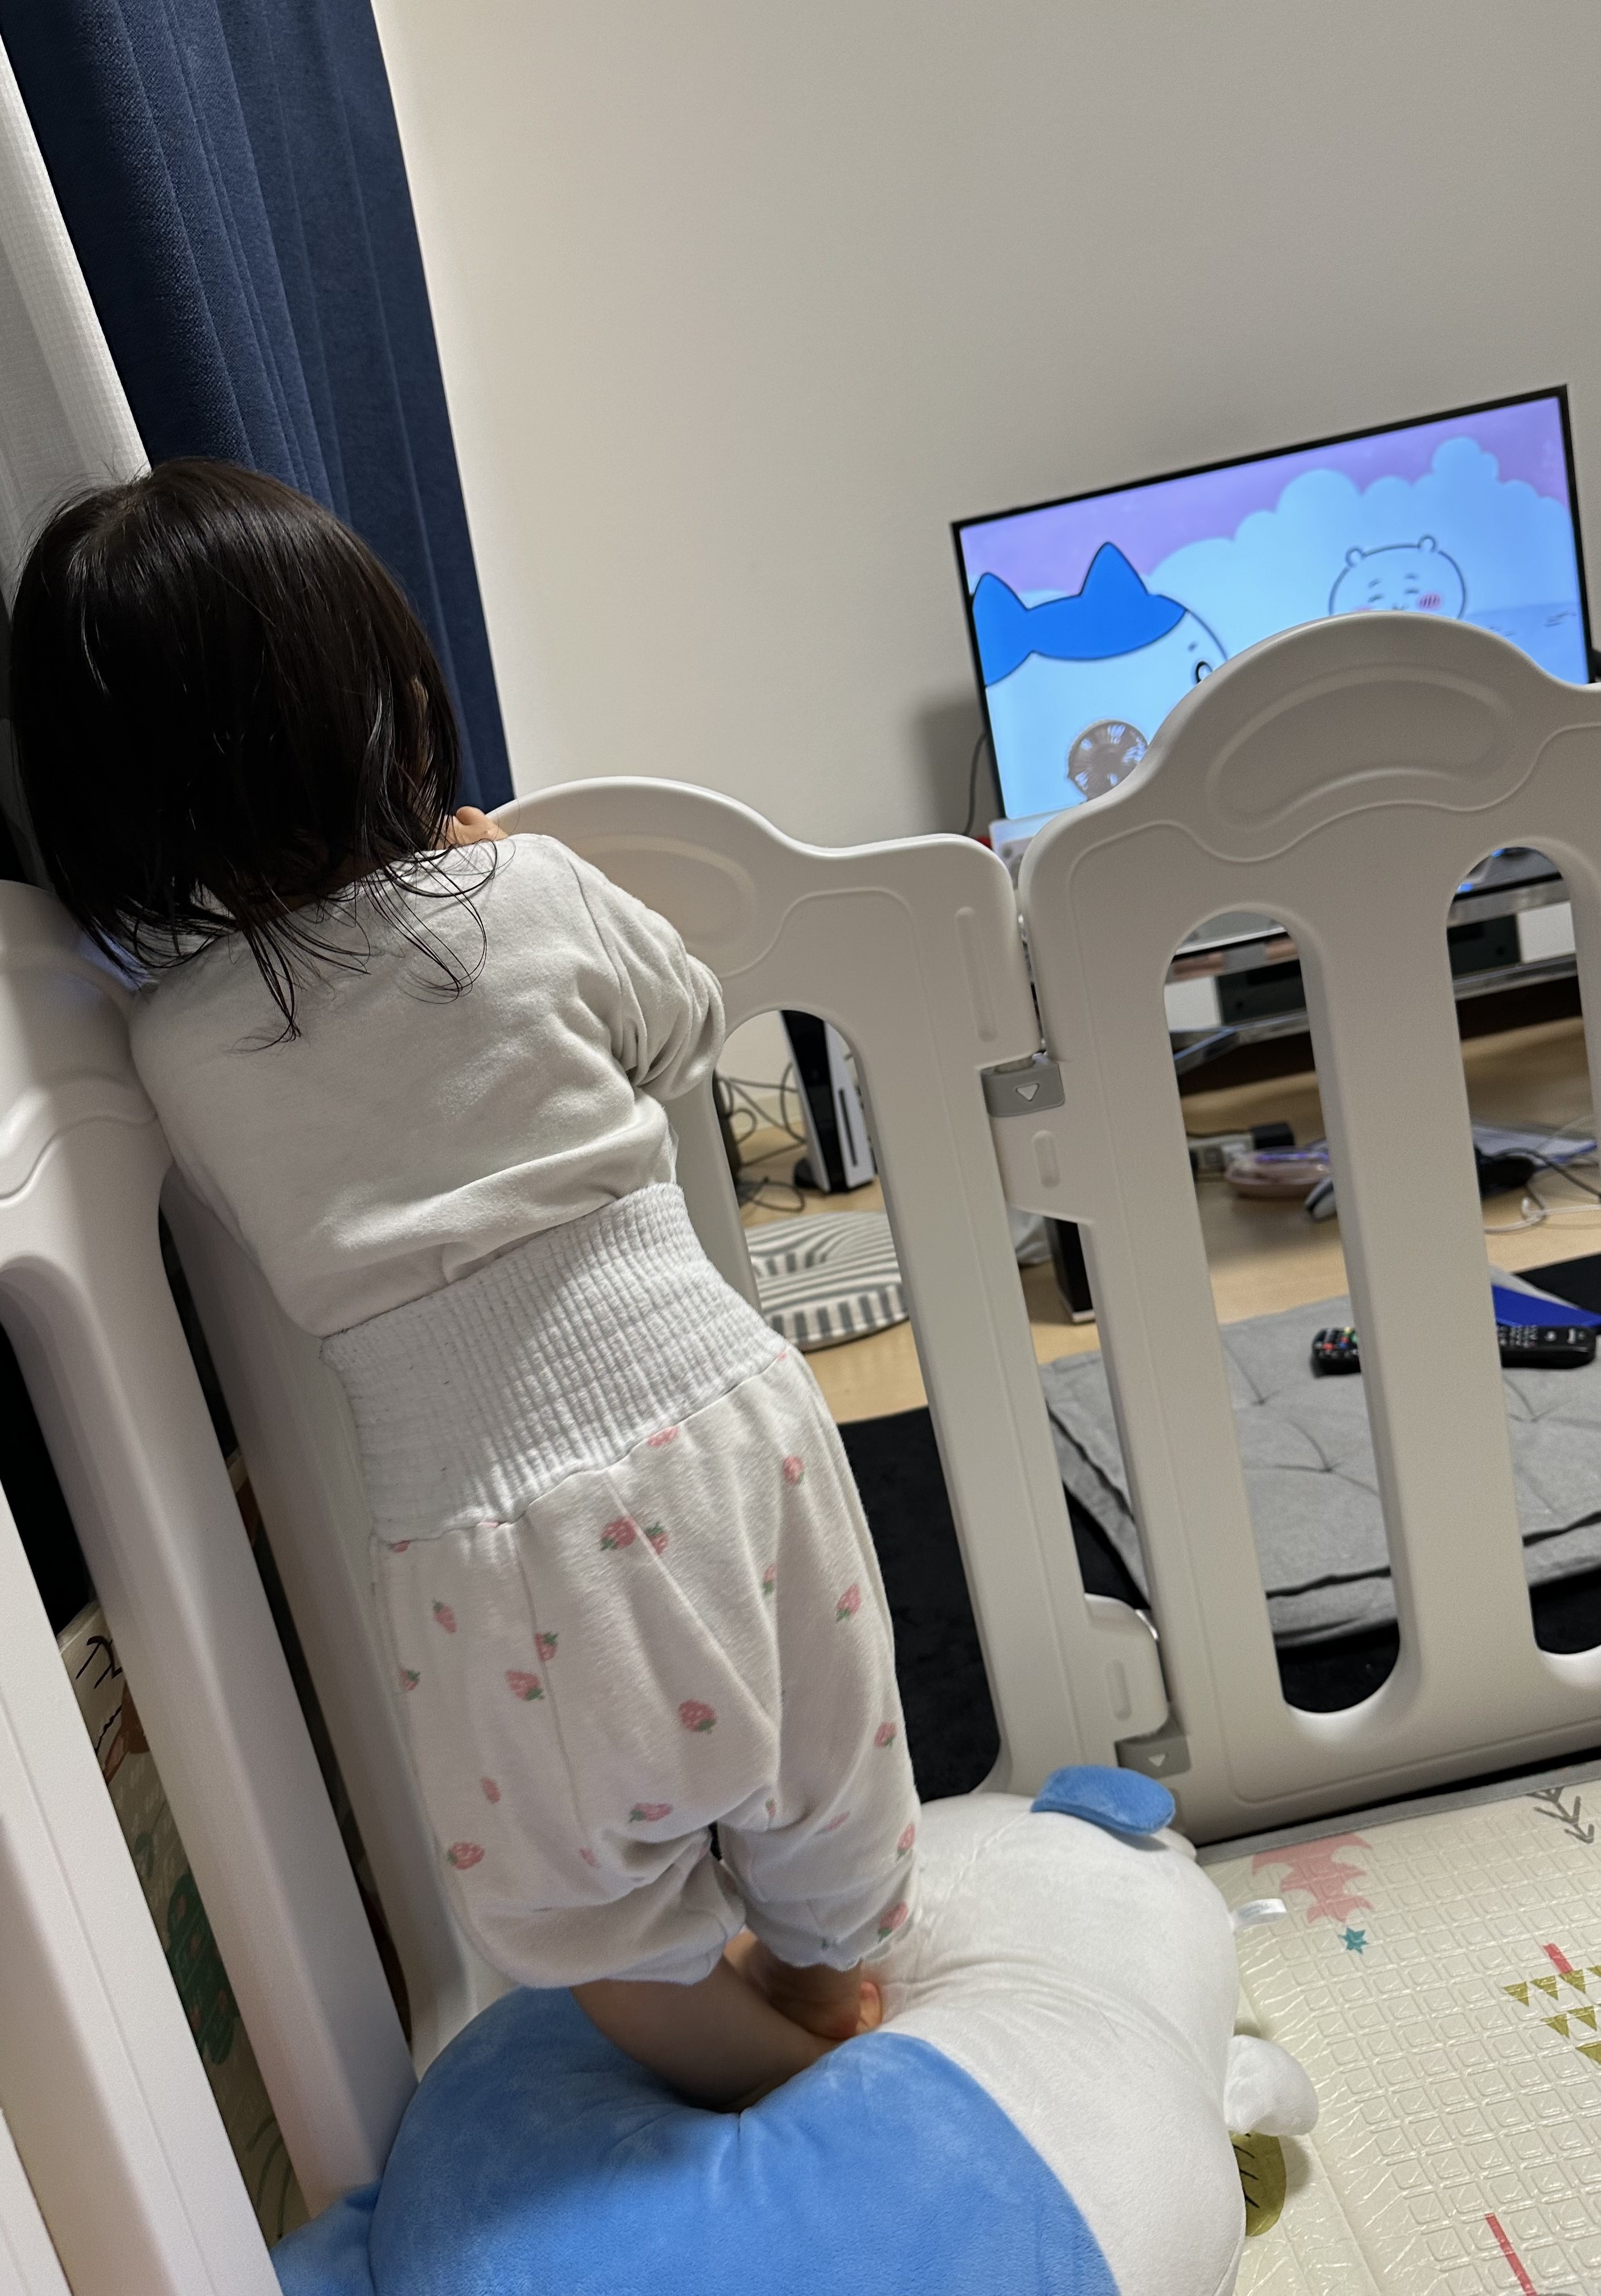 テレビでアニメを観る幼児、背中向けて立っている。